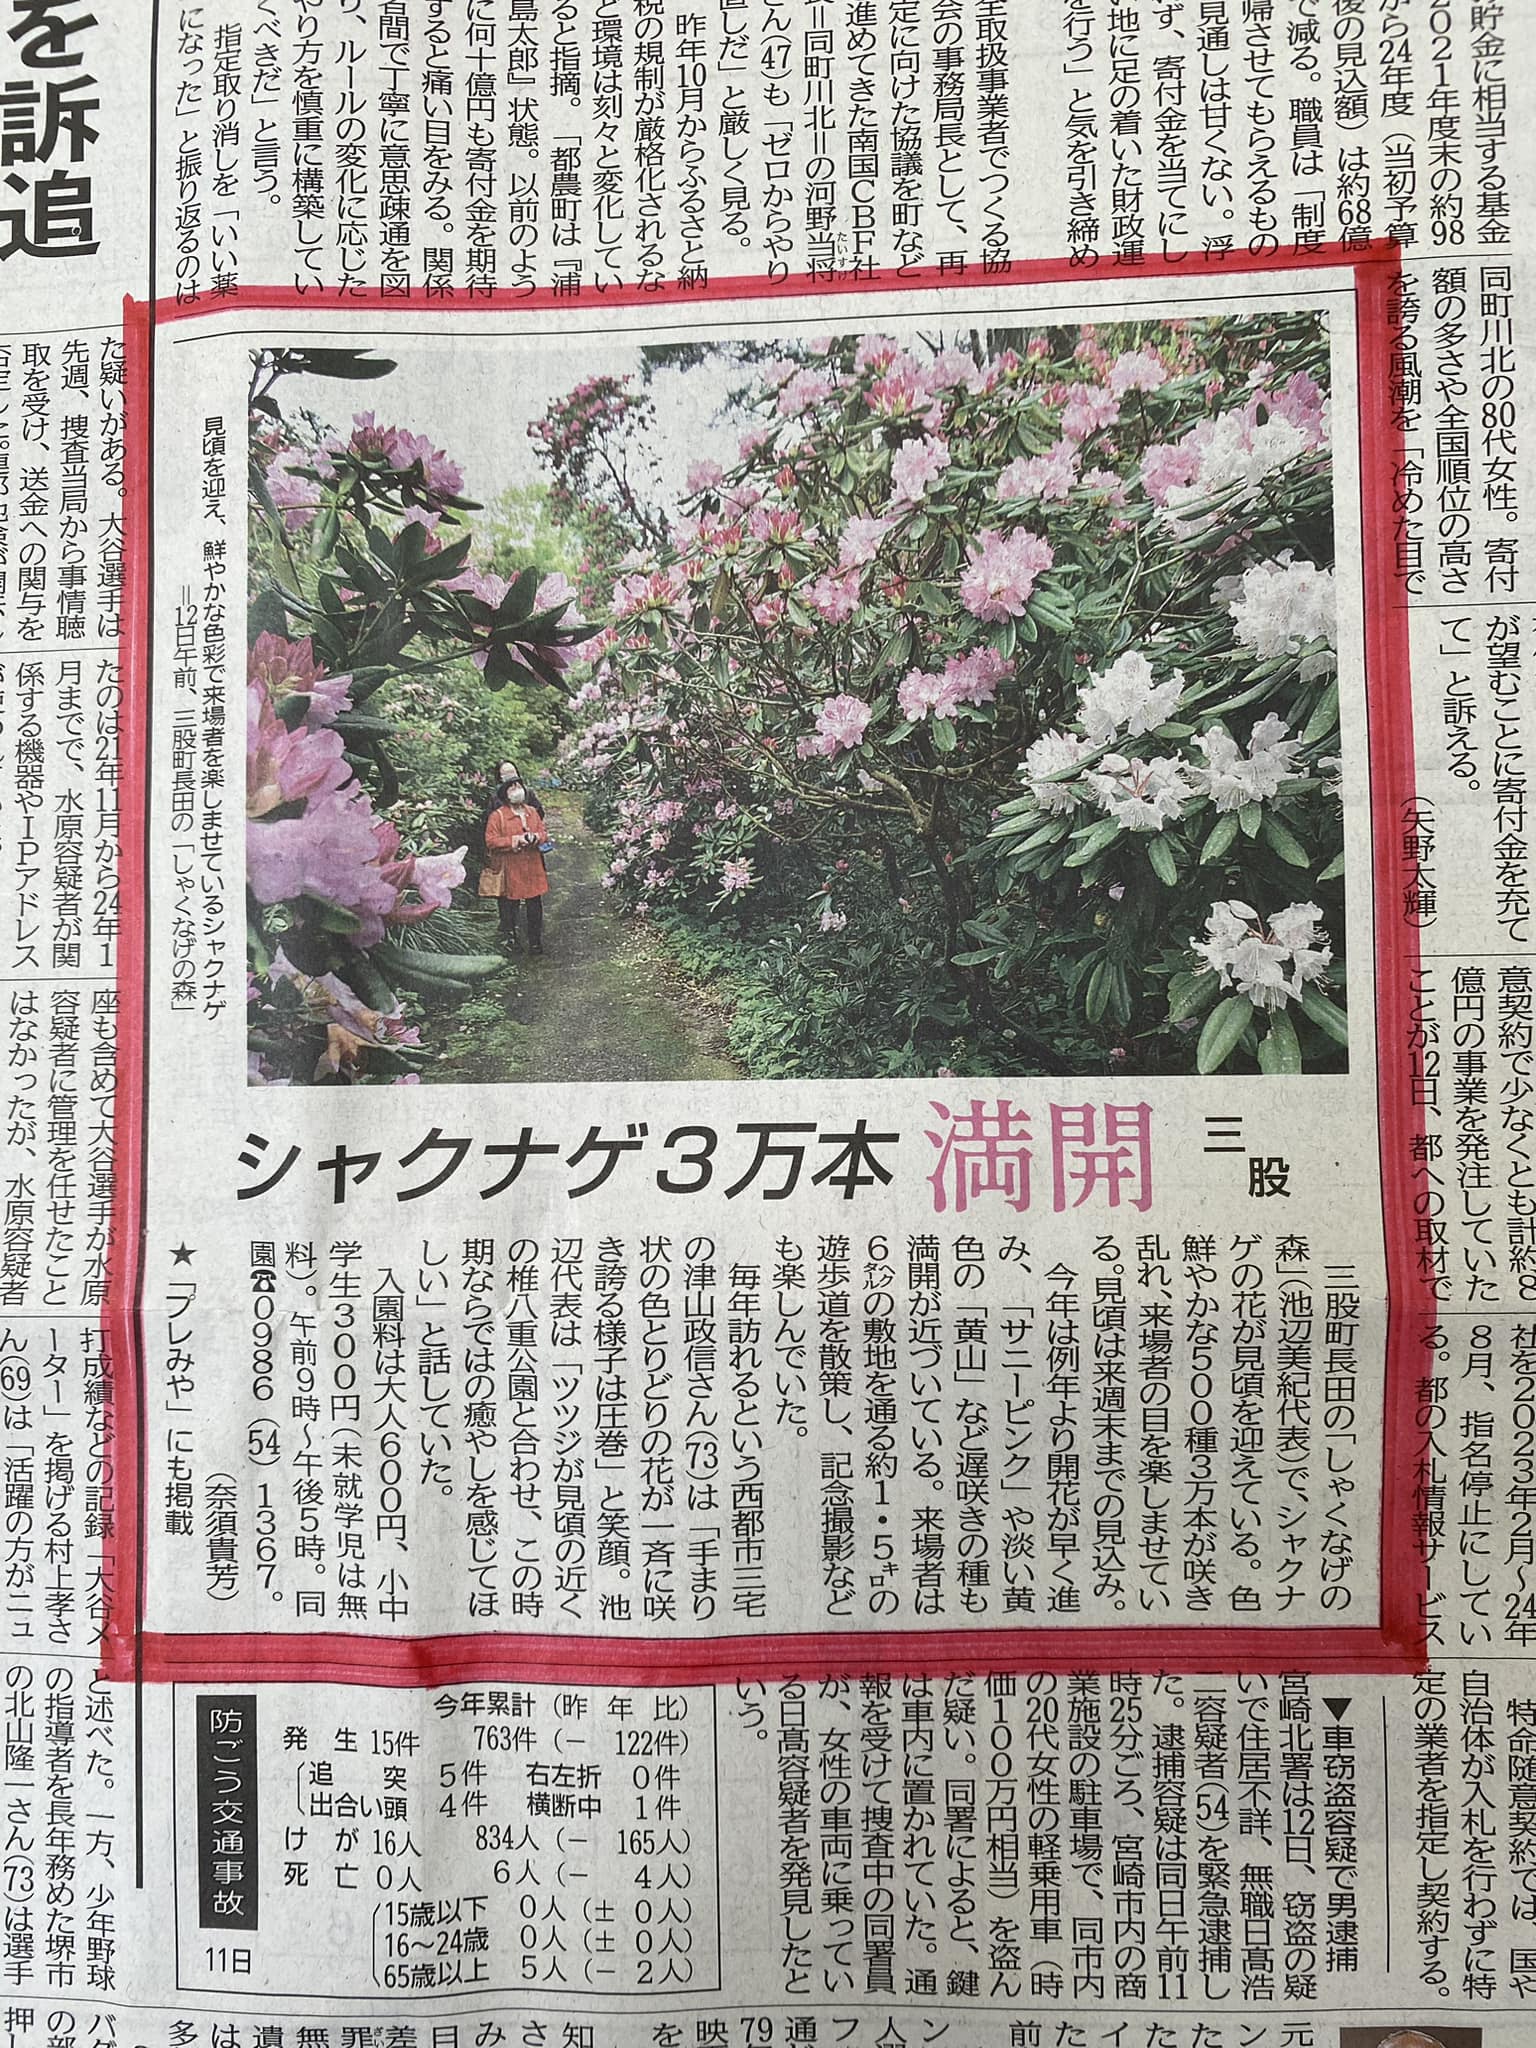 宮崎日日新聞で紹介されました